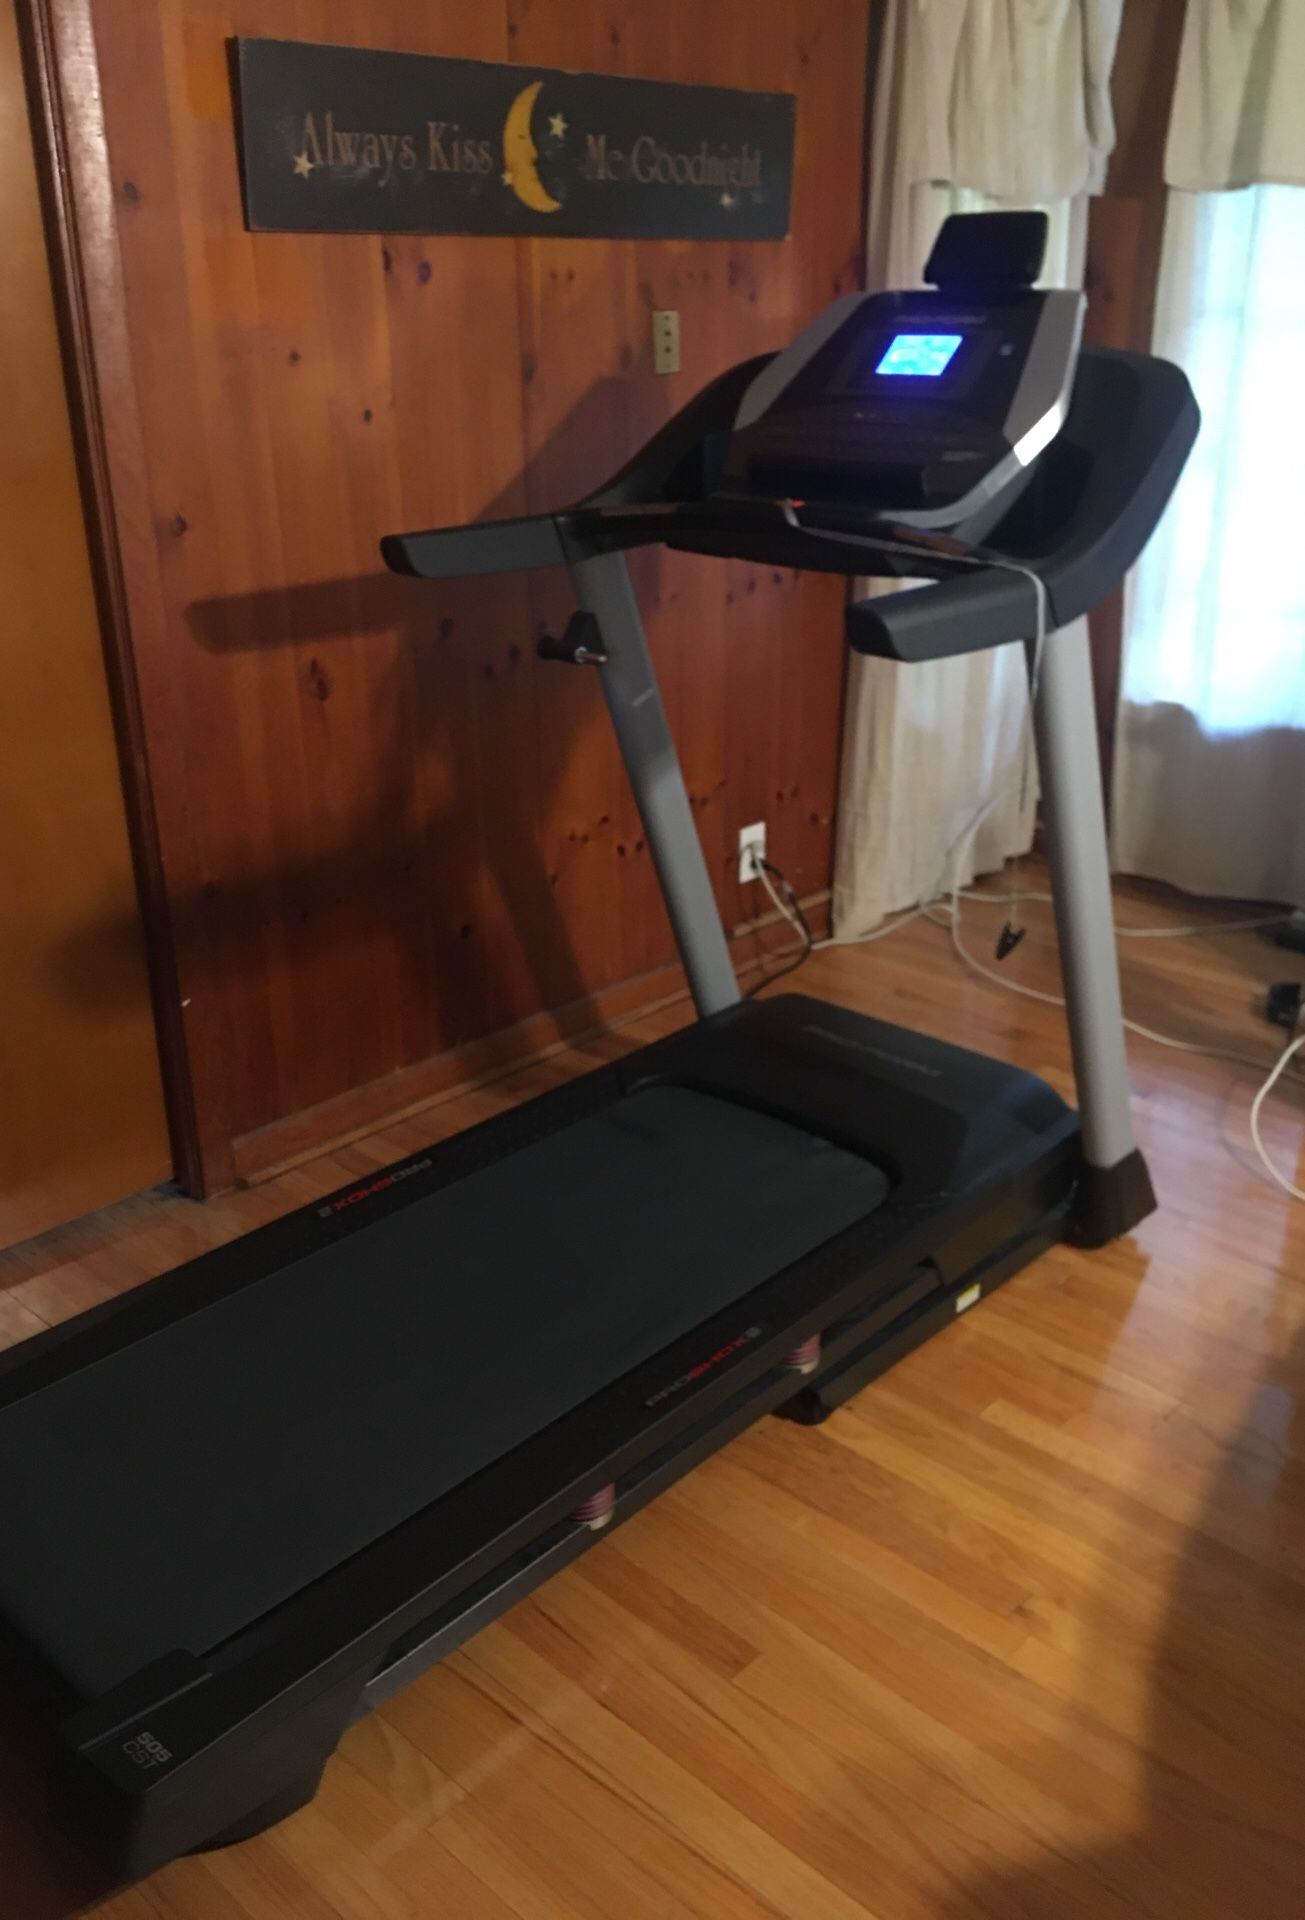 Pro Form treadmill